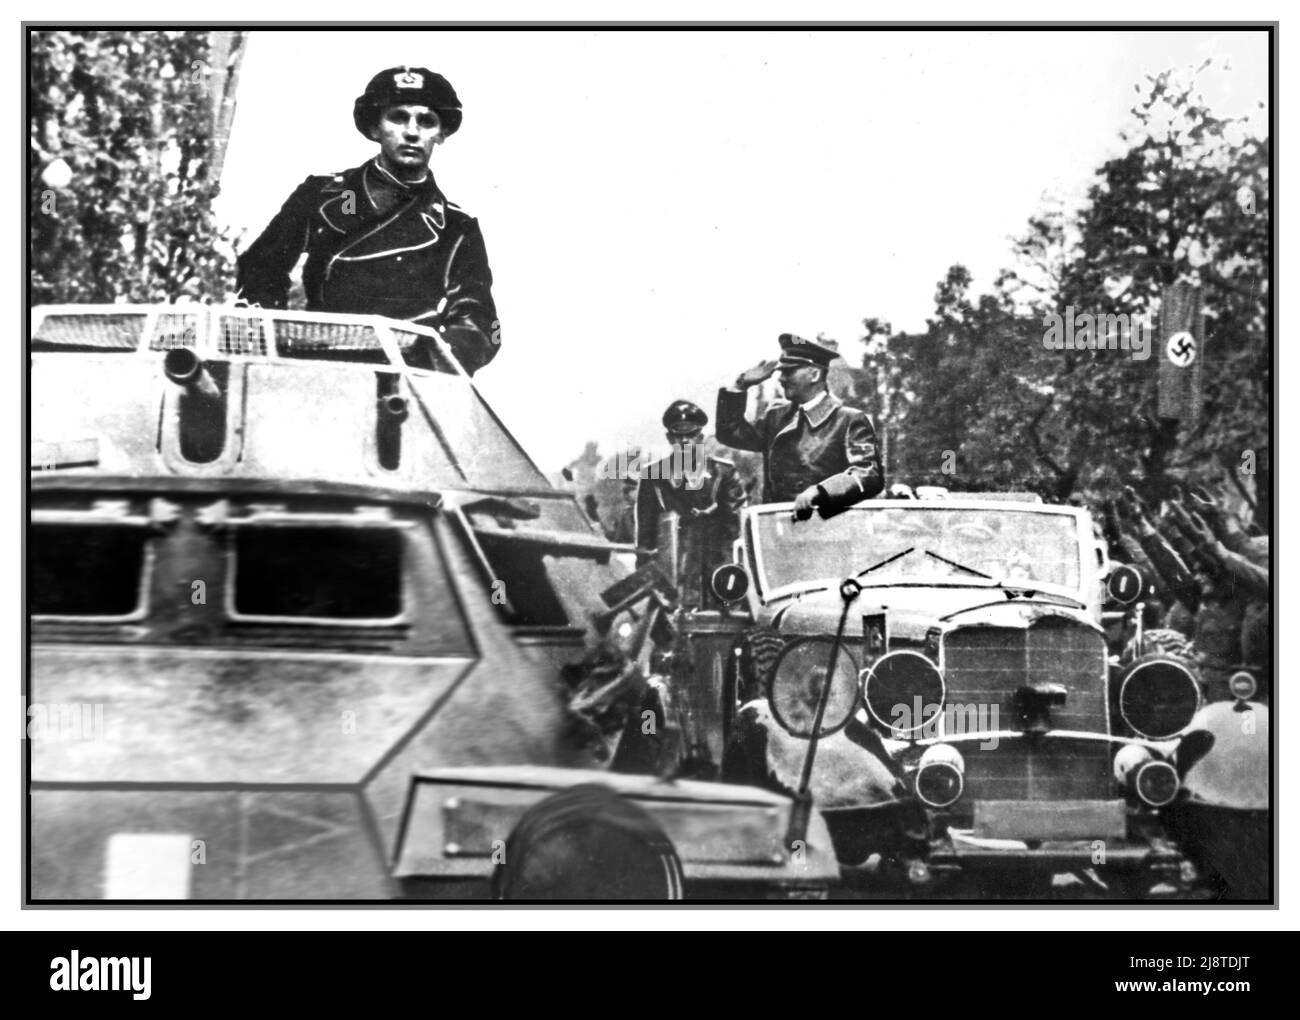 WW2 POLONIA Adolf Hitler saluta e saluta i soldati Heil Hitler salendo dalla sua auto Mercedes a metà pista. In primo piano, il veicolo blindato SdKfz 222. Leichter Panzerspähwagen, con il soldato panzertruppen in piedi. L'occupazione di Gdańsk Polonia che ha iniziato la seconda guerra mondiale 1939 Foto Stock